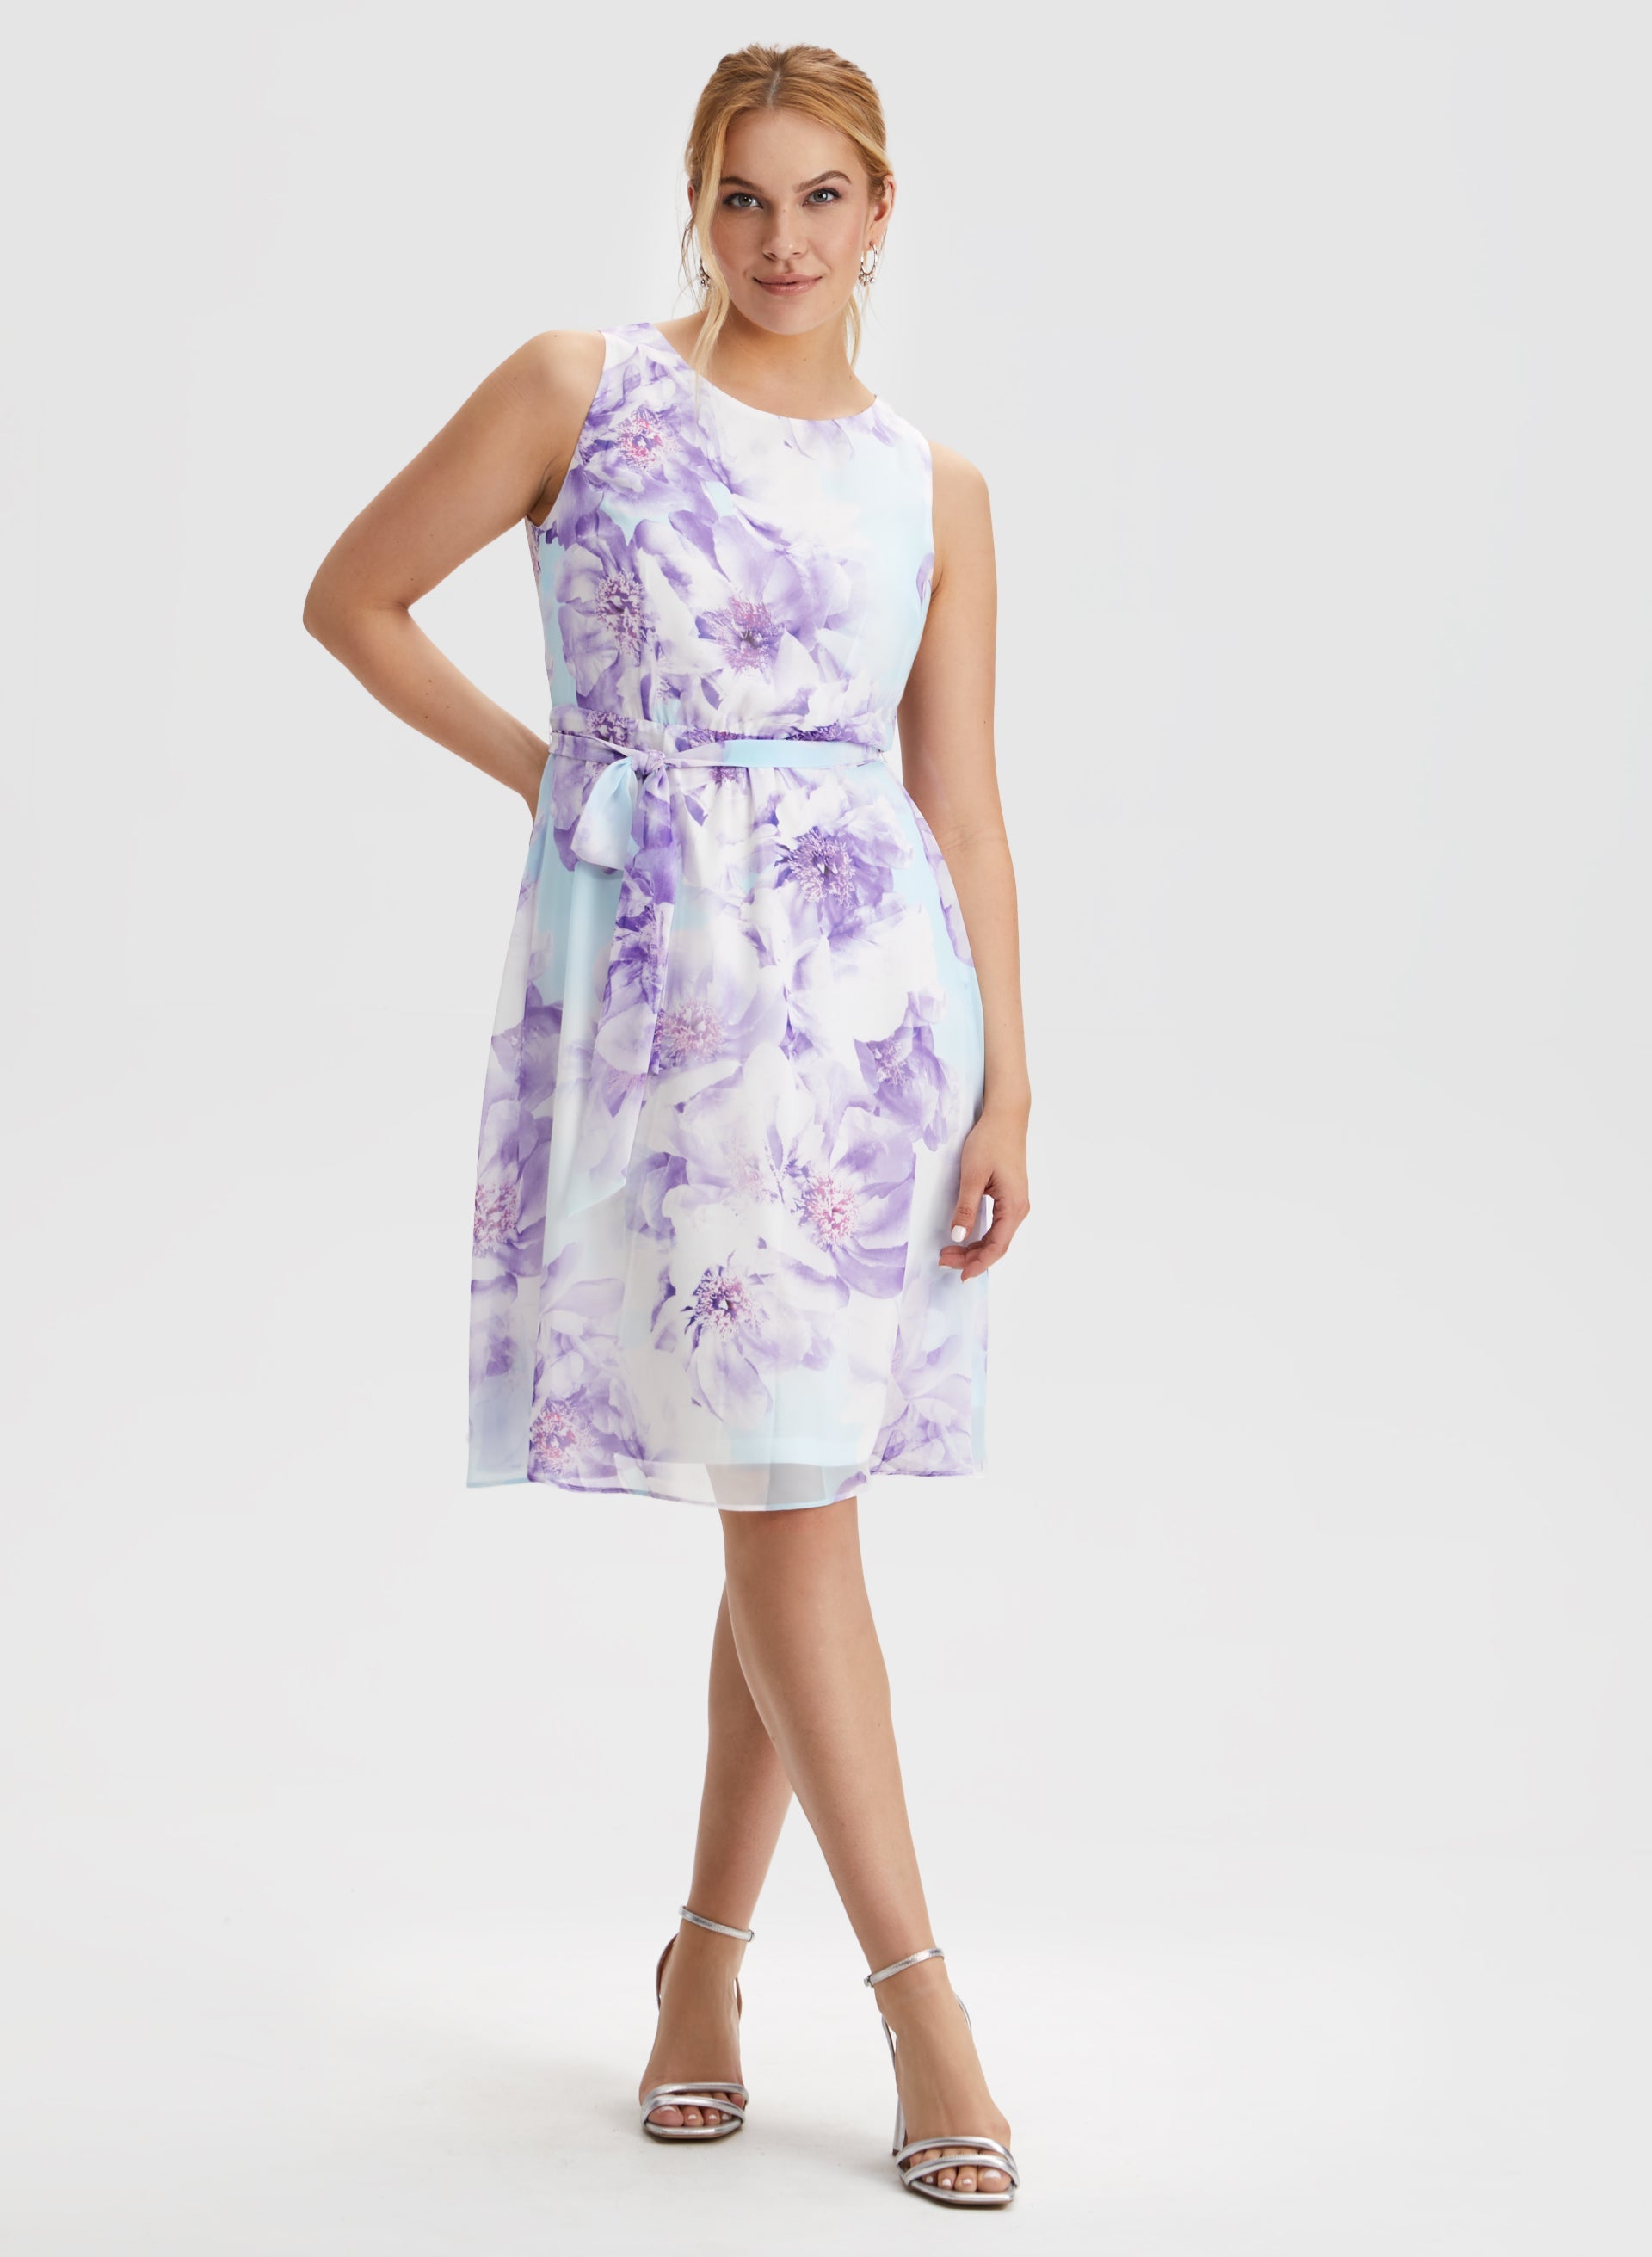 Floral Print Belted Dress